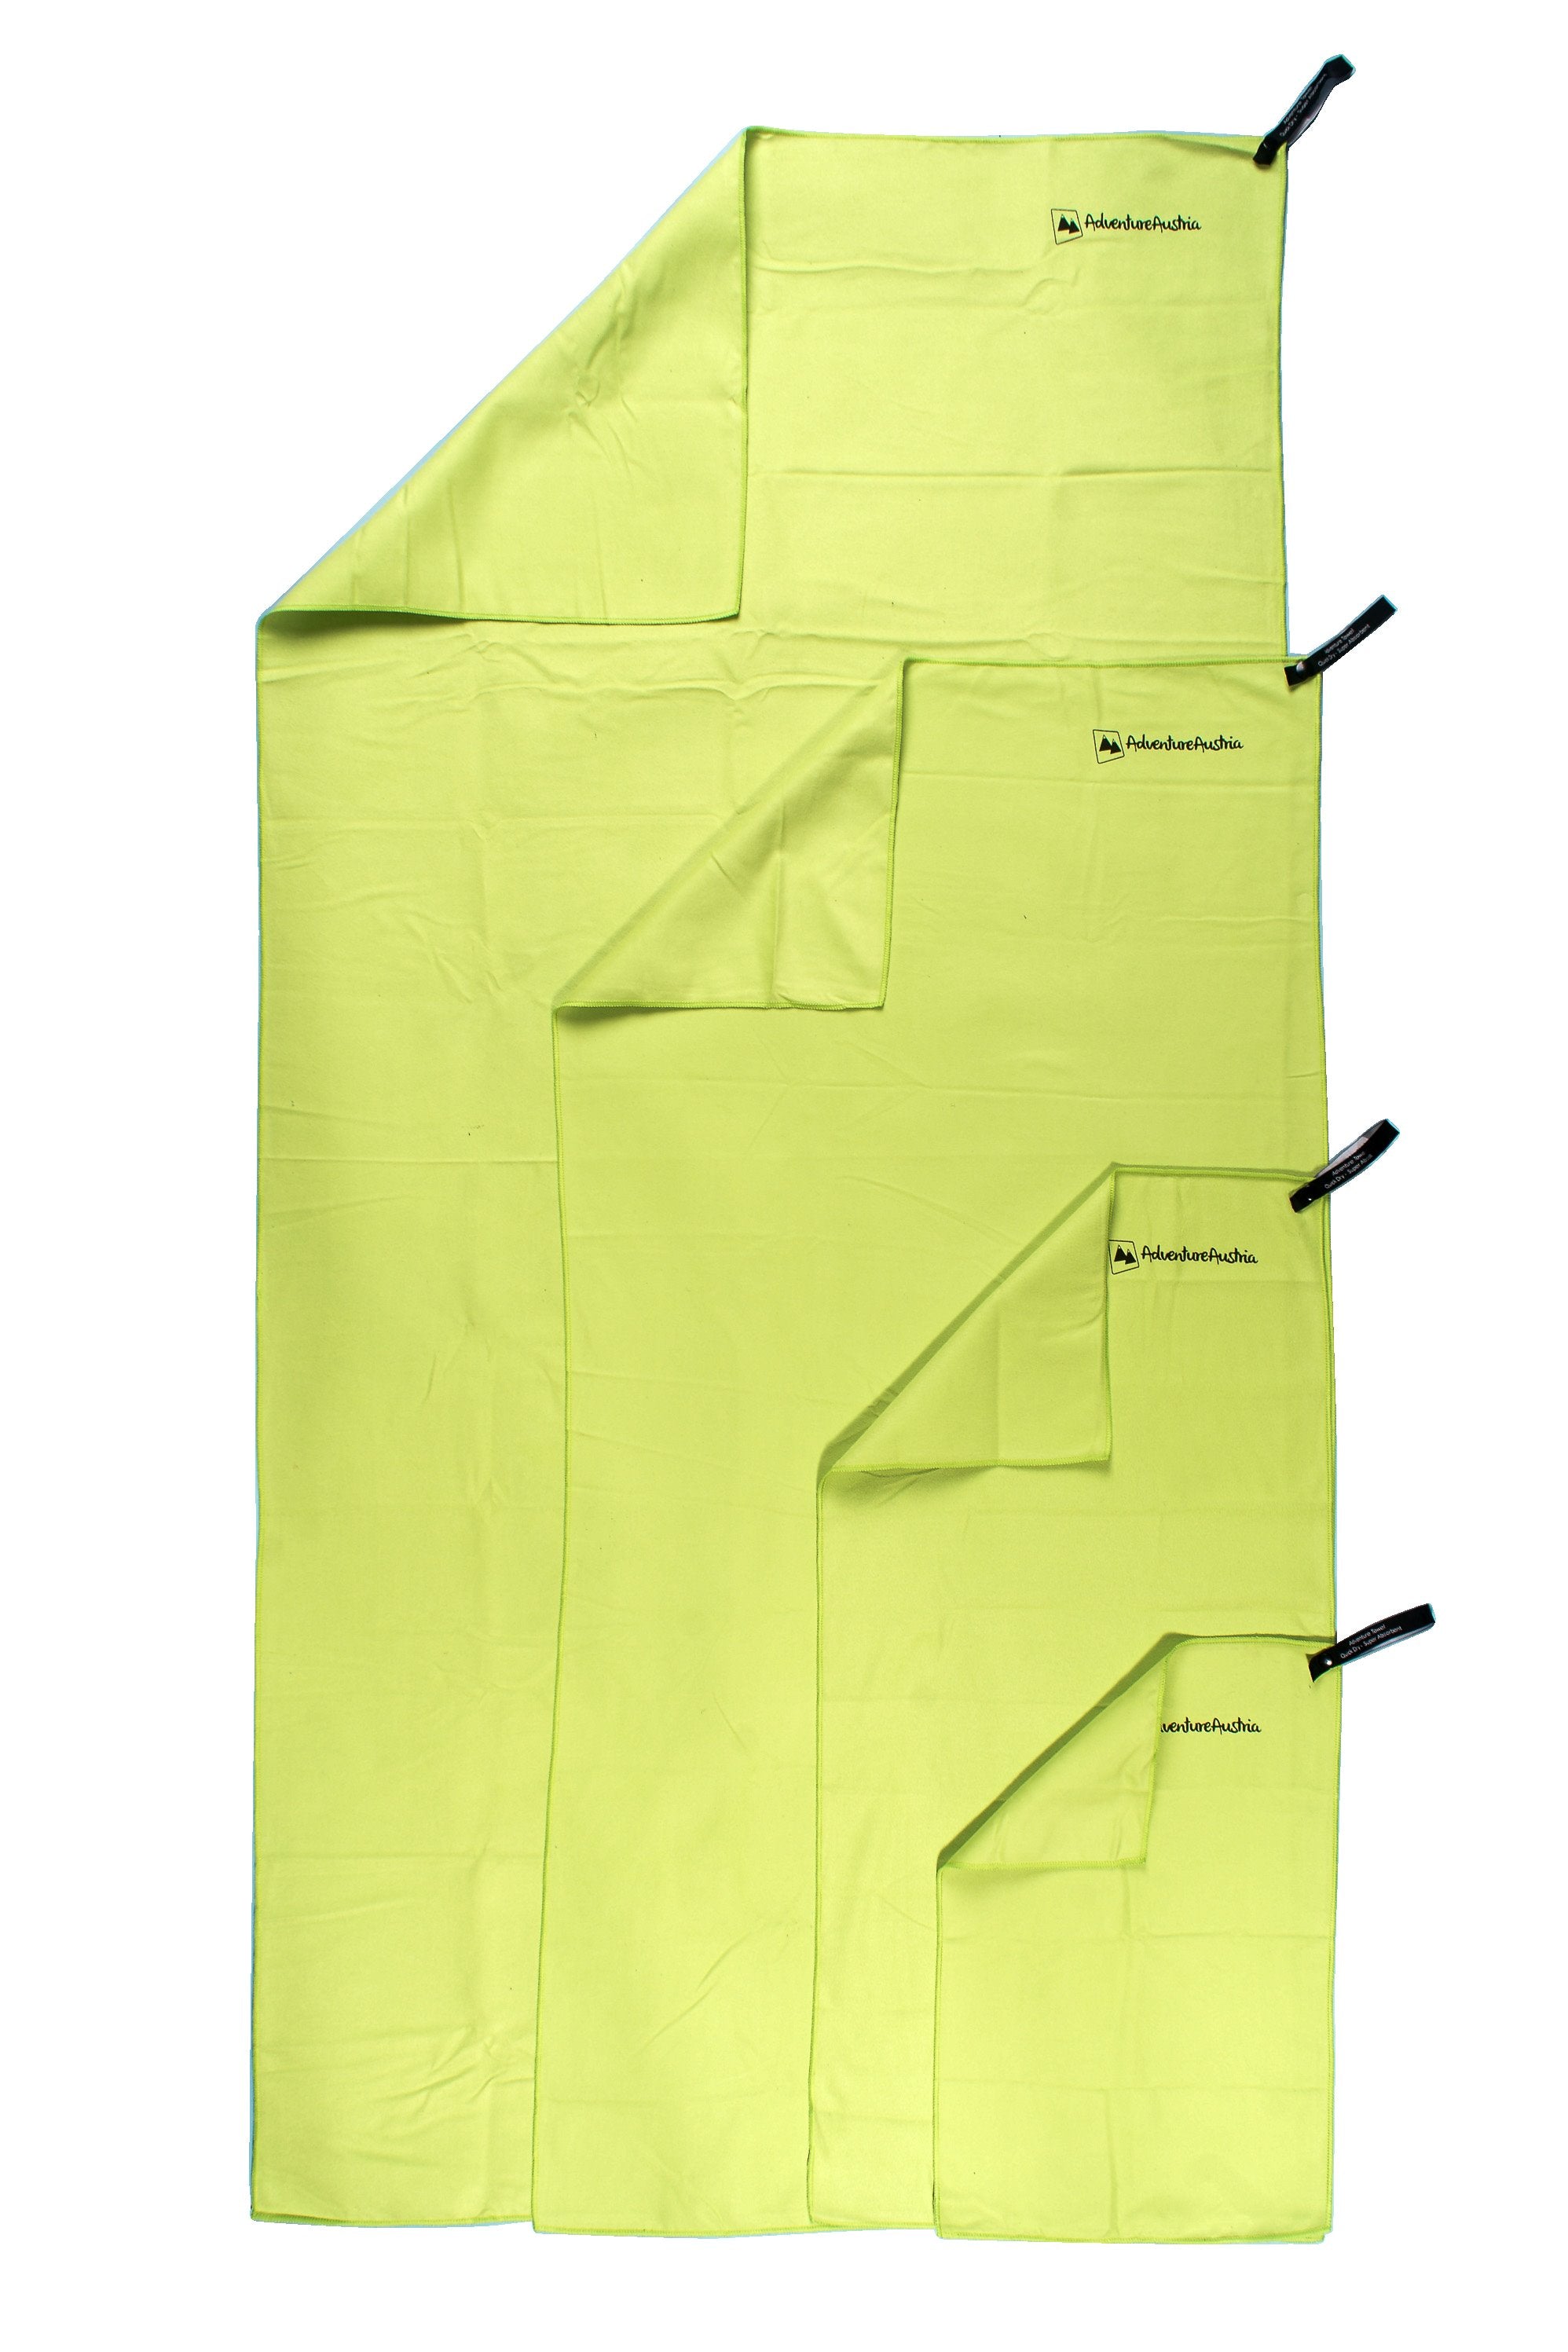 green microfibre towels